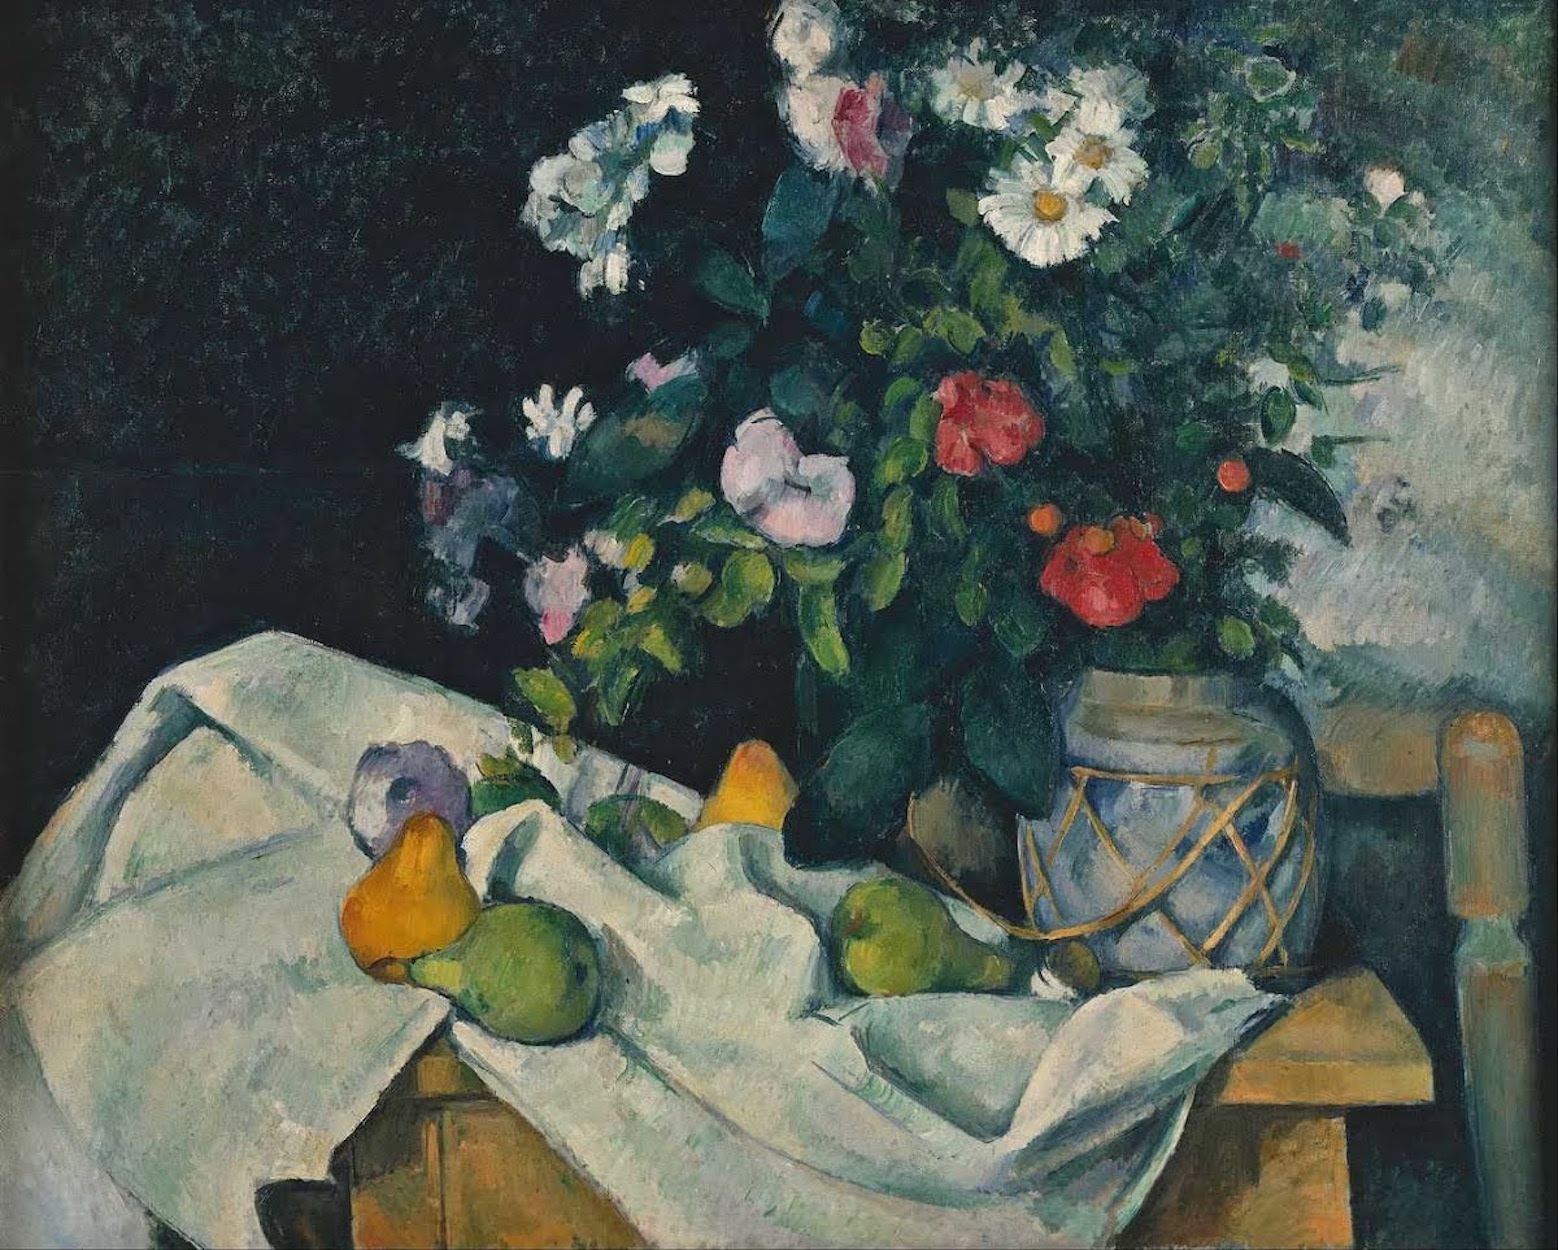 花と果物のある静物 by Paul Cézanne - 1890年頃 - 82.0 x 65.5 cm 